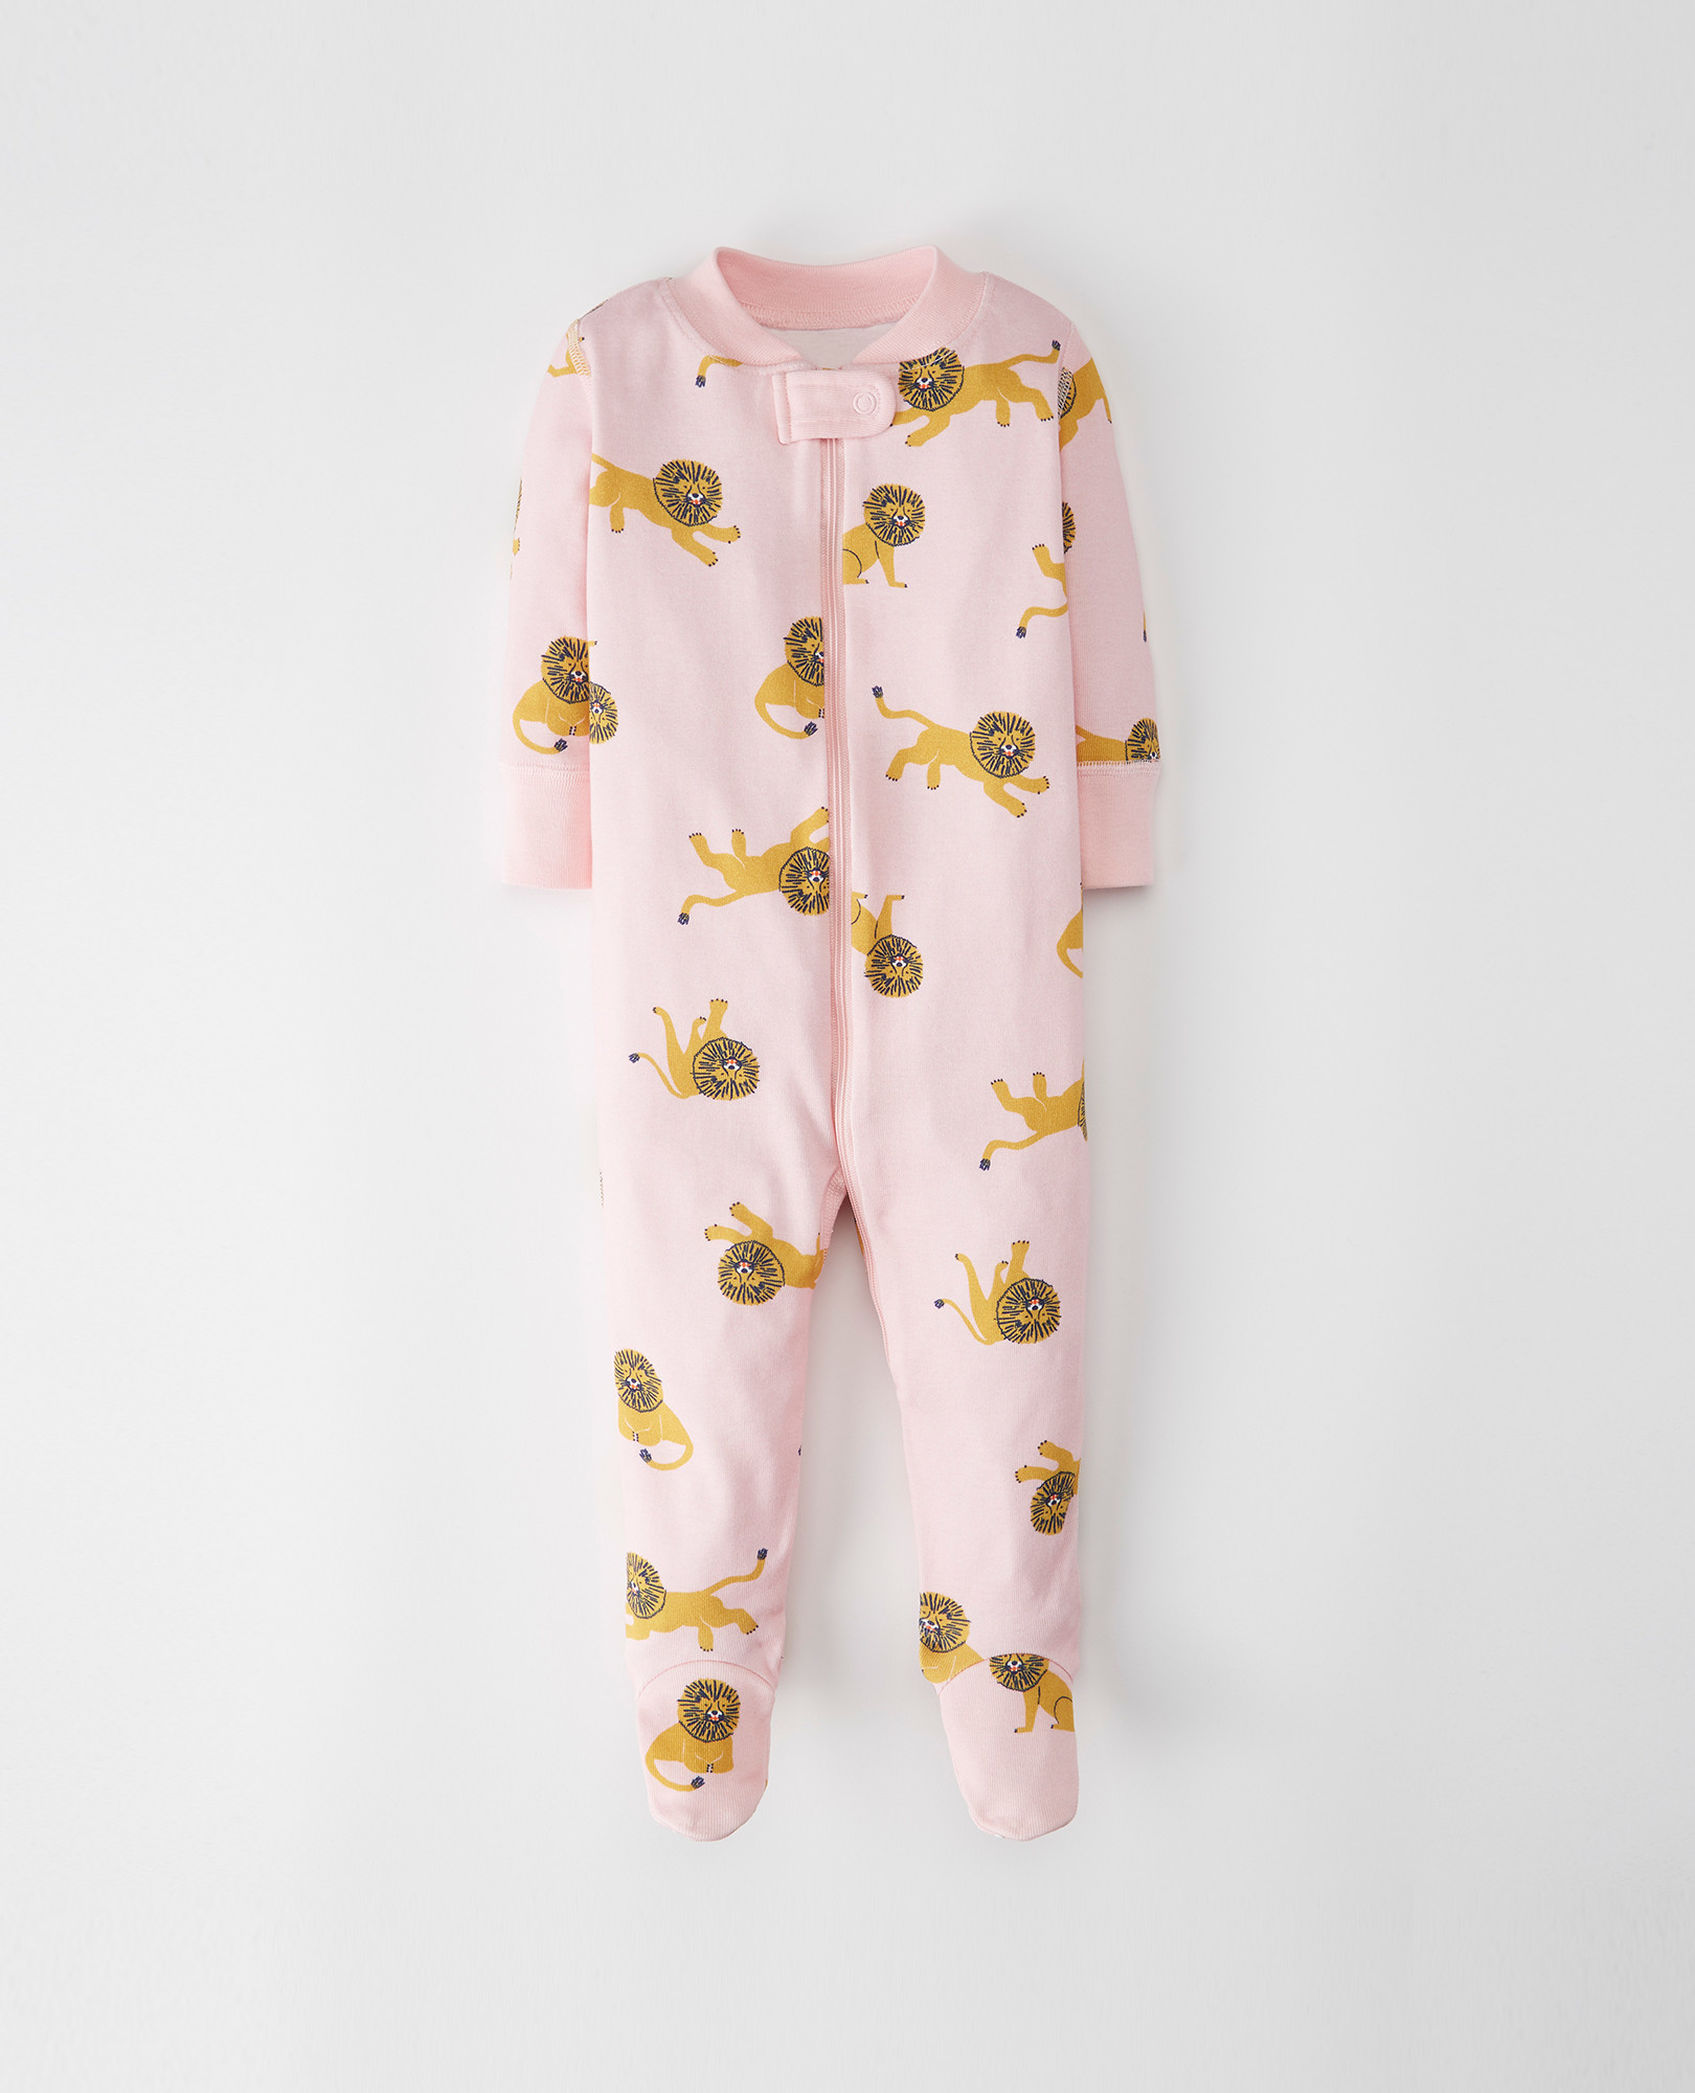 Printed Lion Footie Pajama